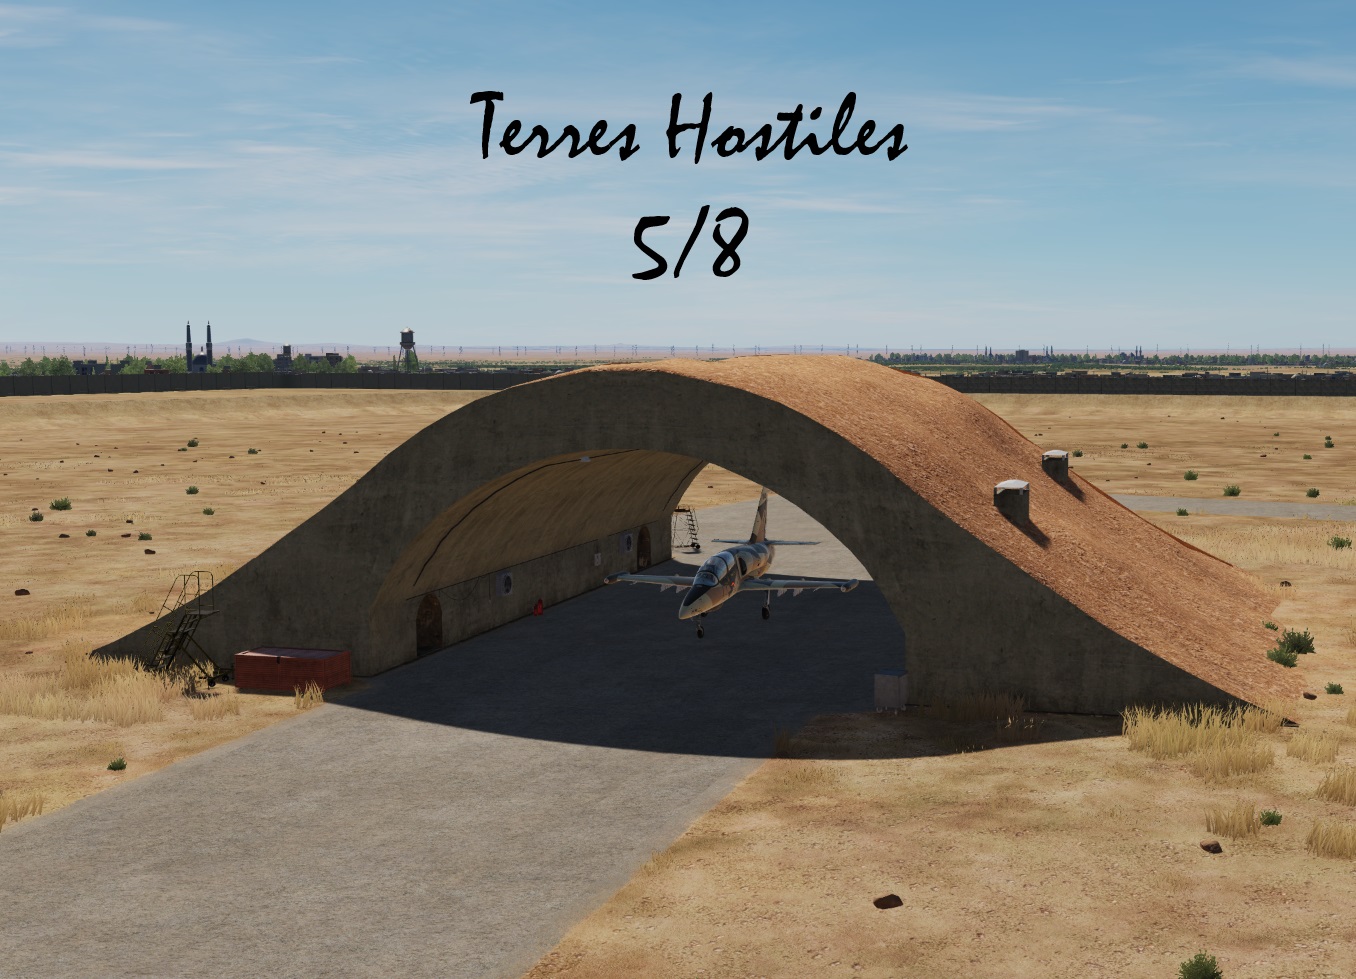 Terres Hostiles v1.0 5/8